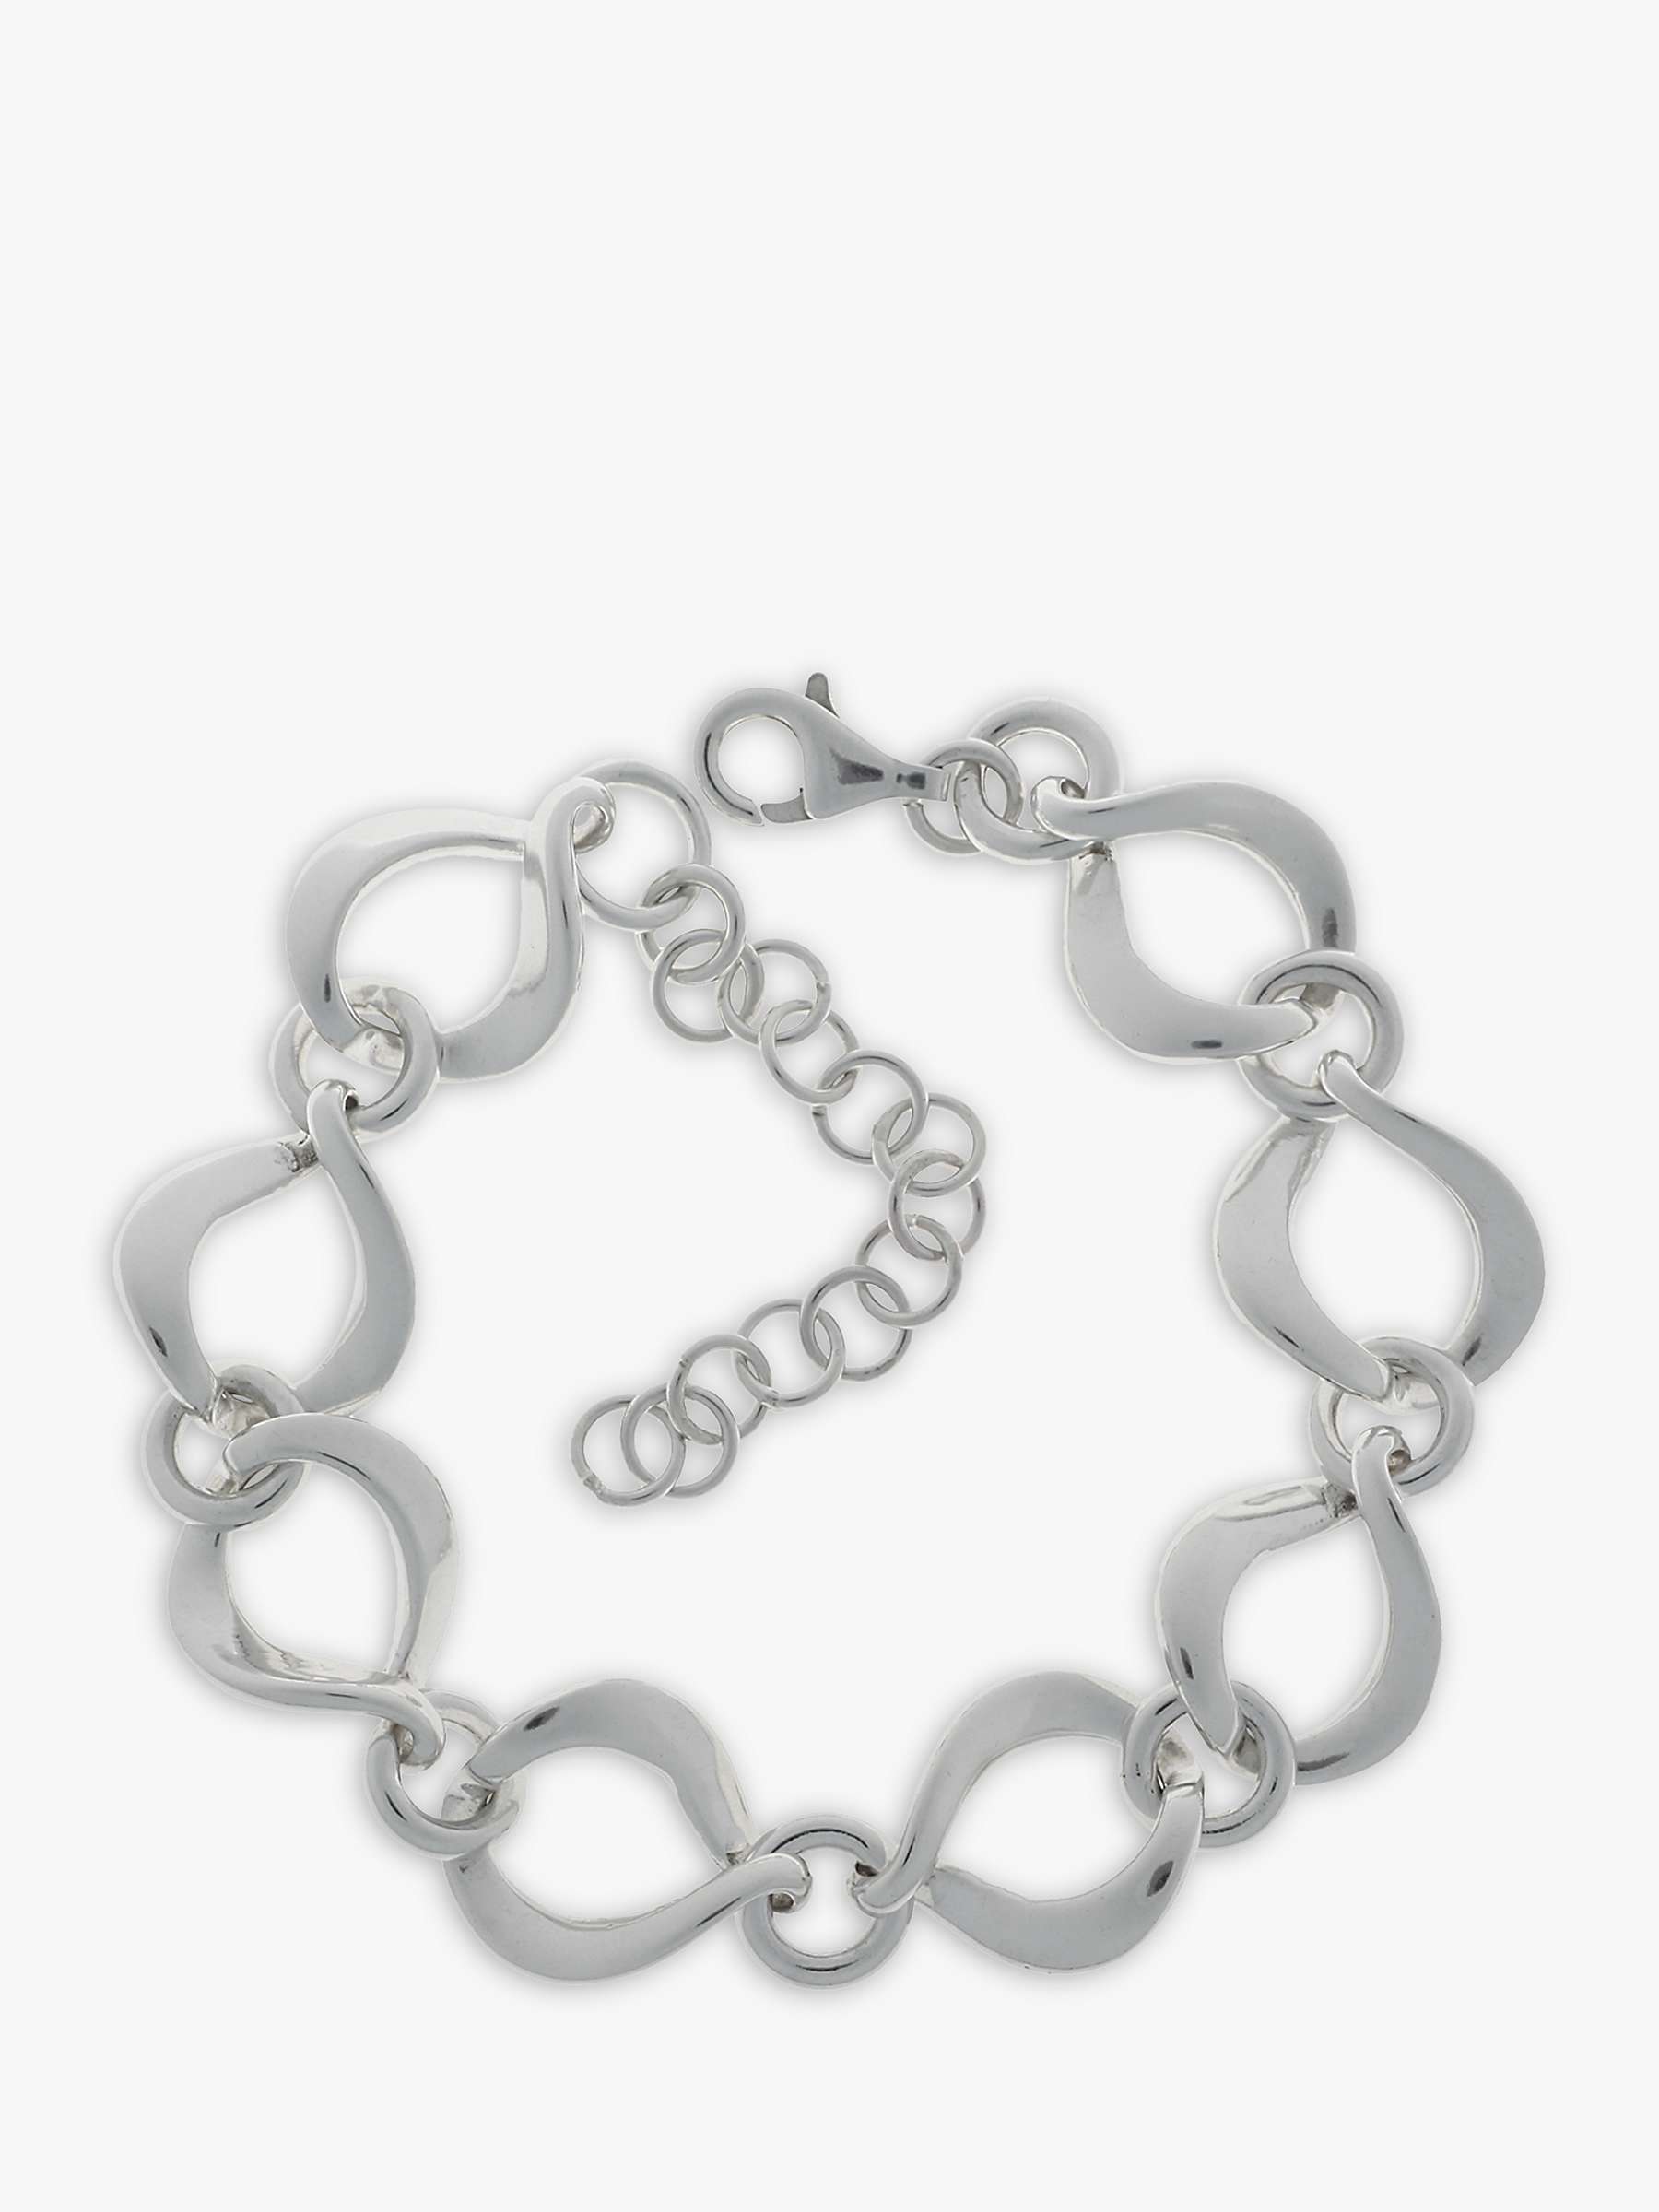 Buy Nina B Sterling Silver Twisted Open Link Bracelet Online at johnlewis.com